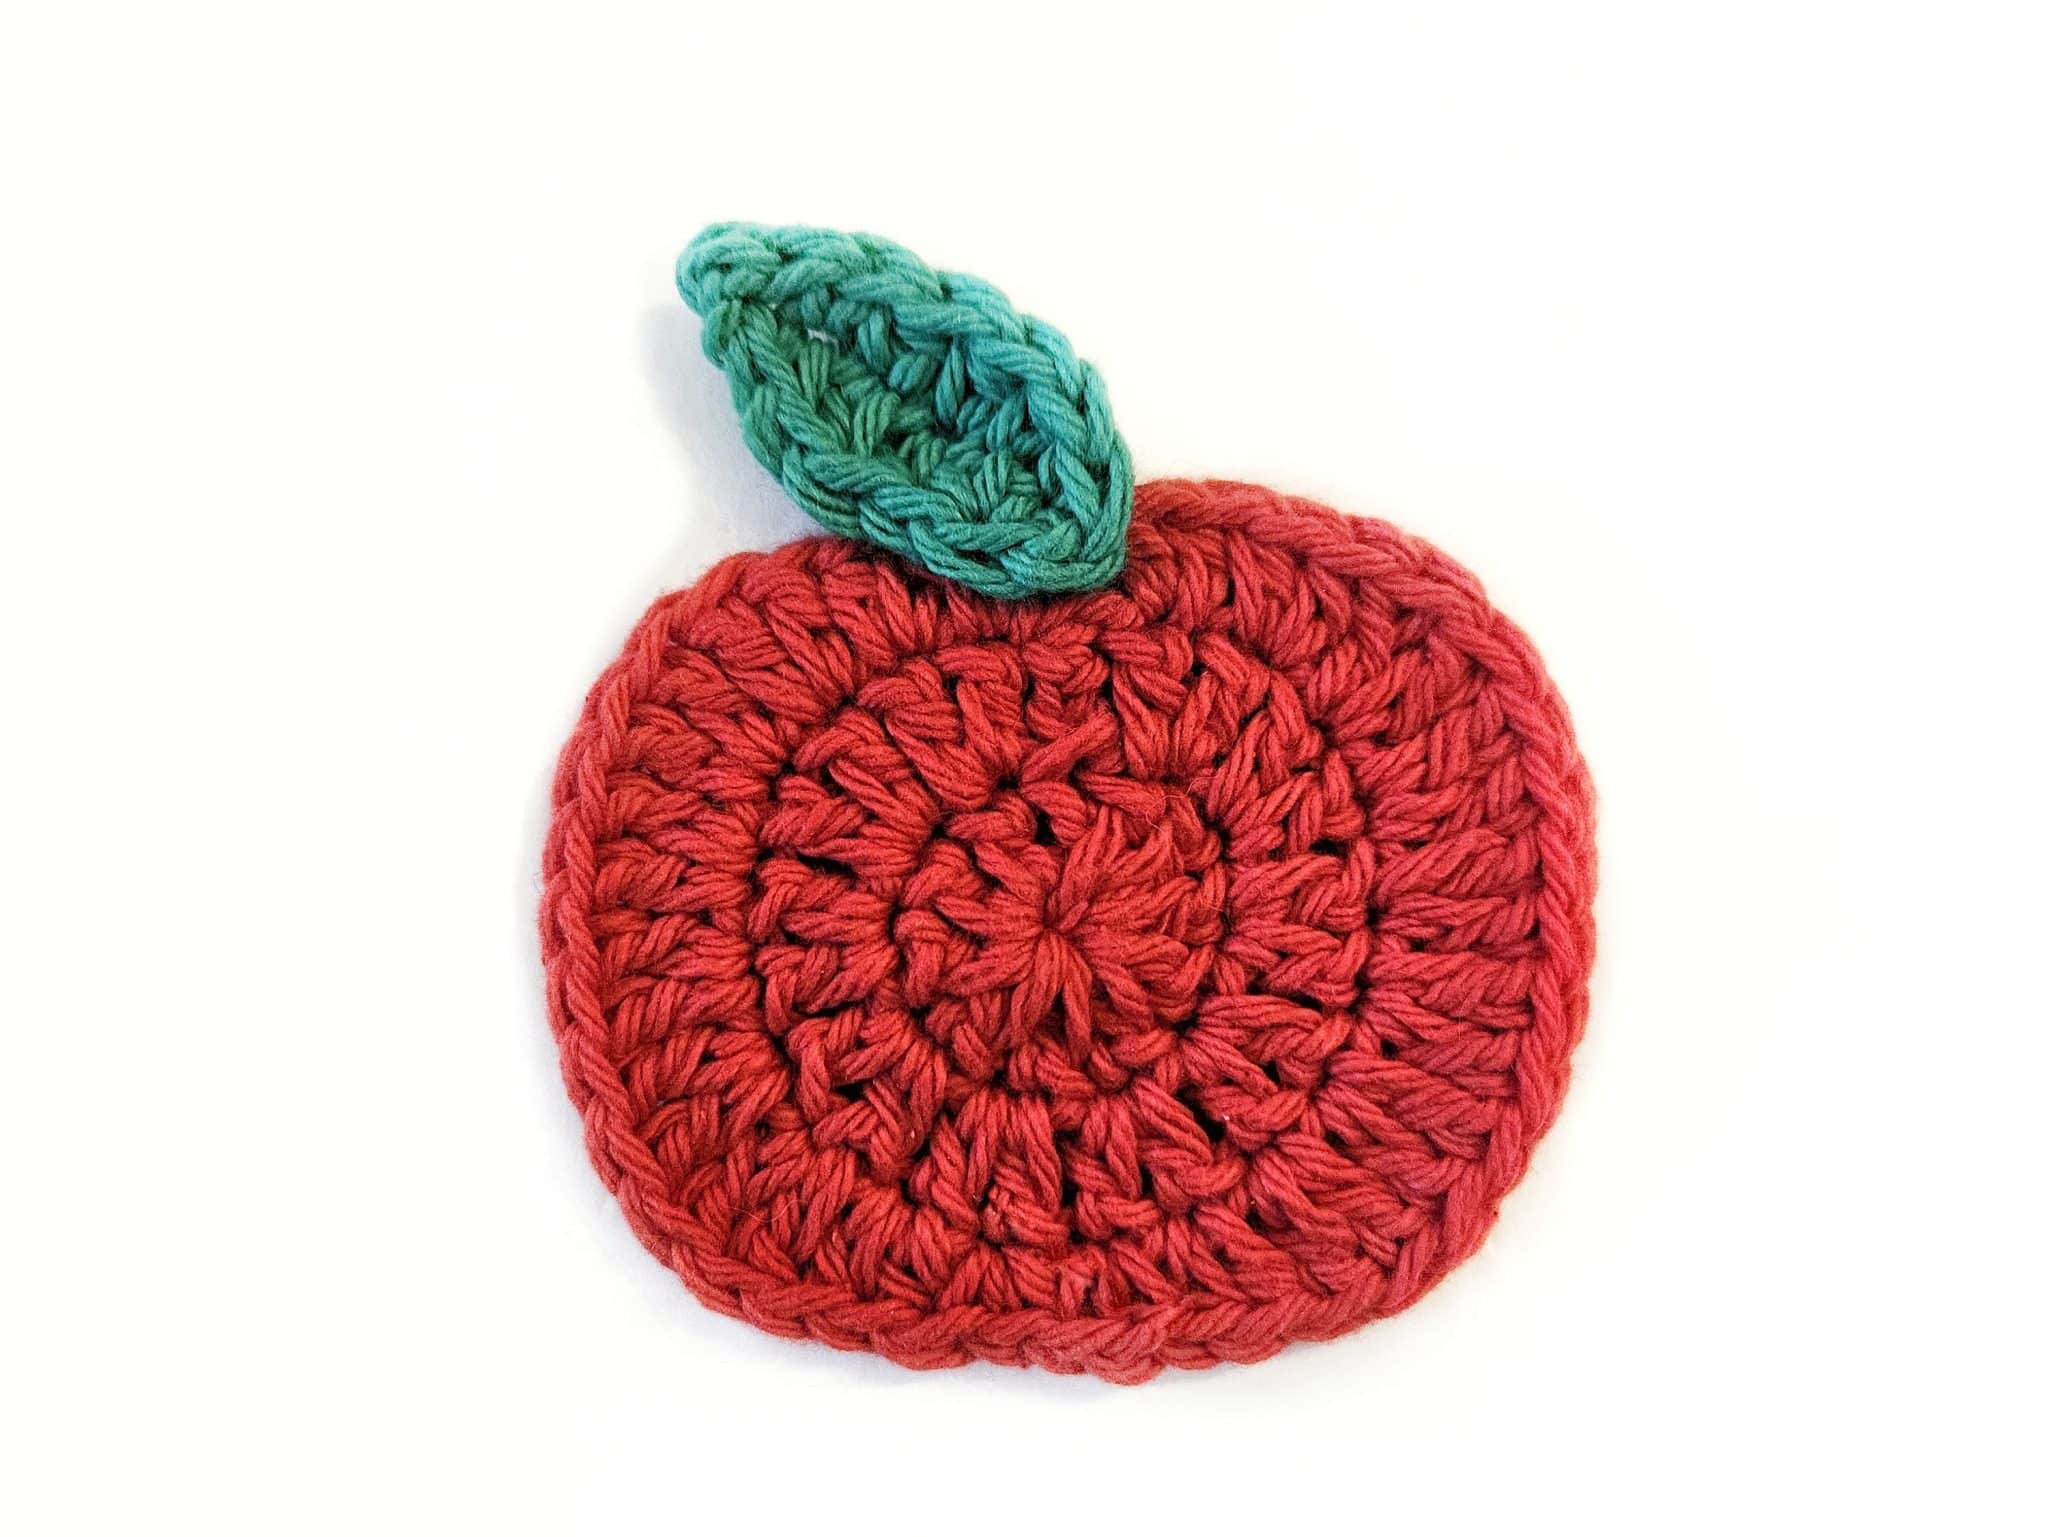 8 Coboo Yarn ideas  crochet patterns, crochet, crochet projects